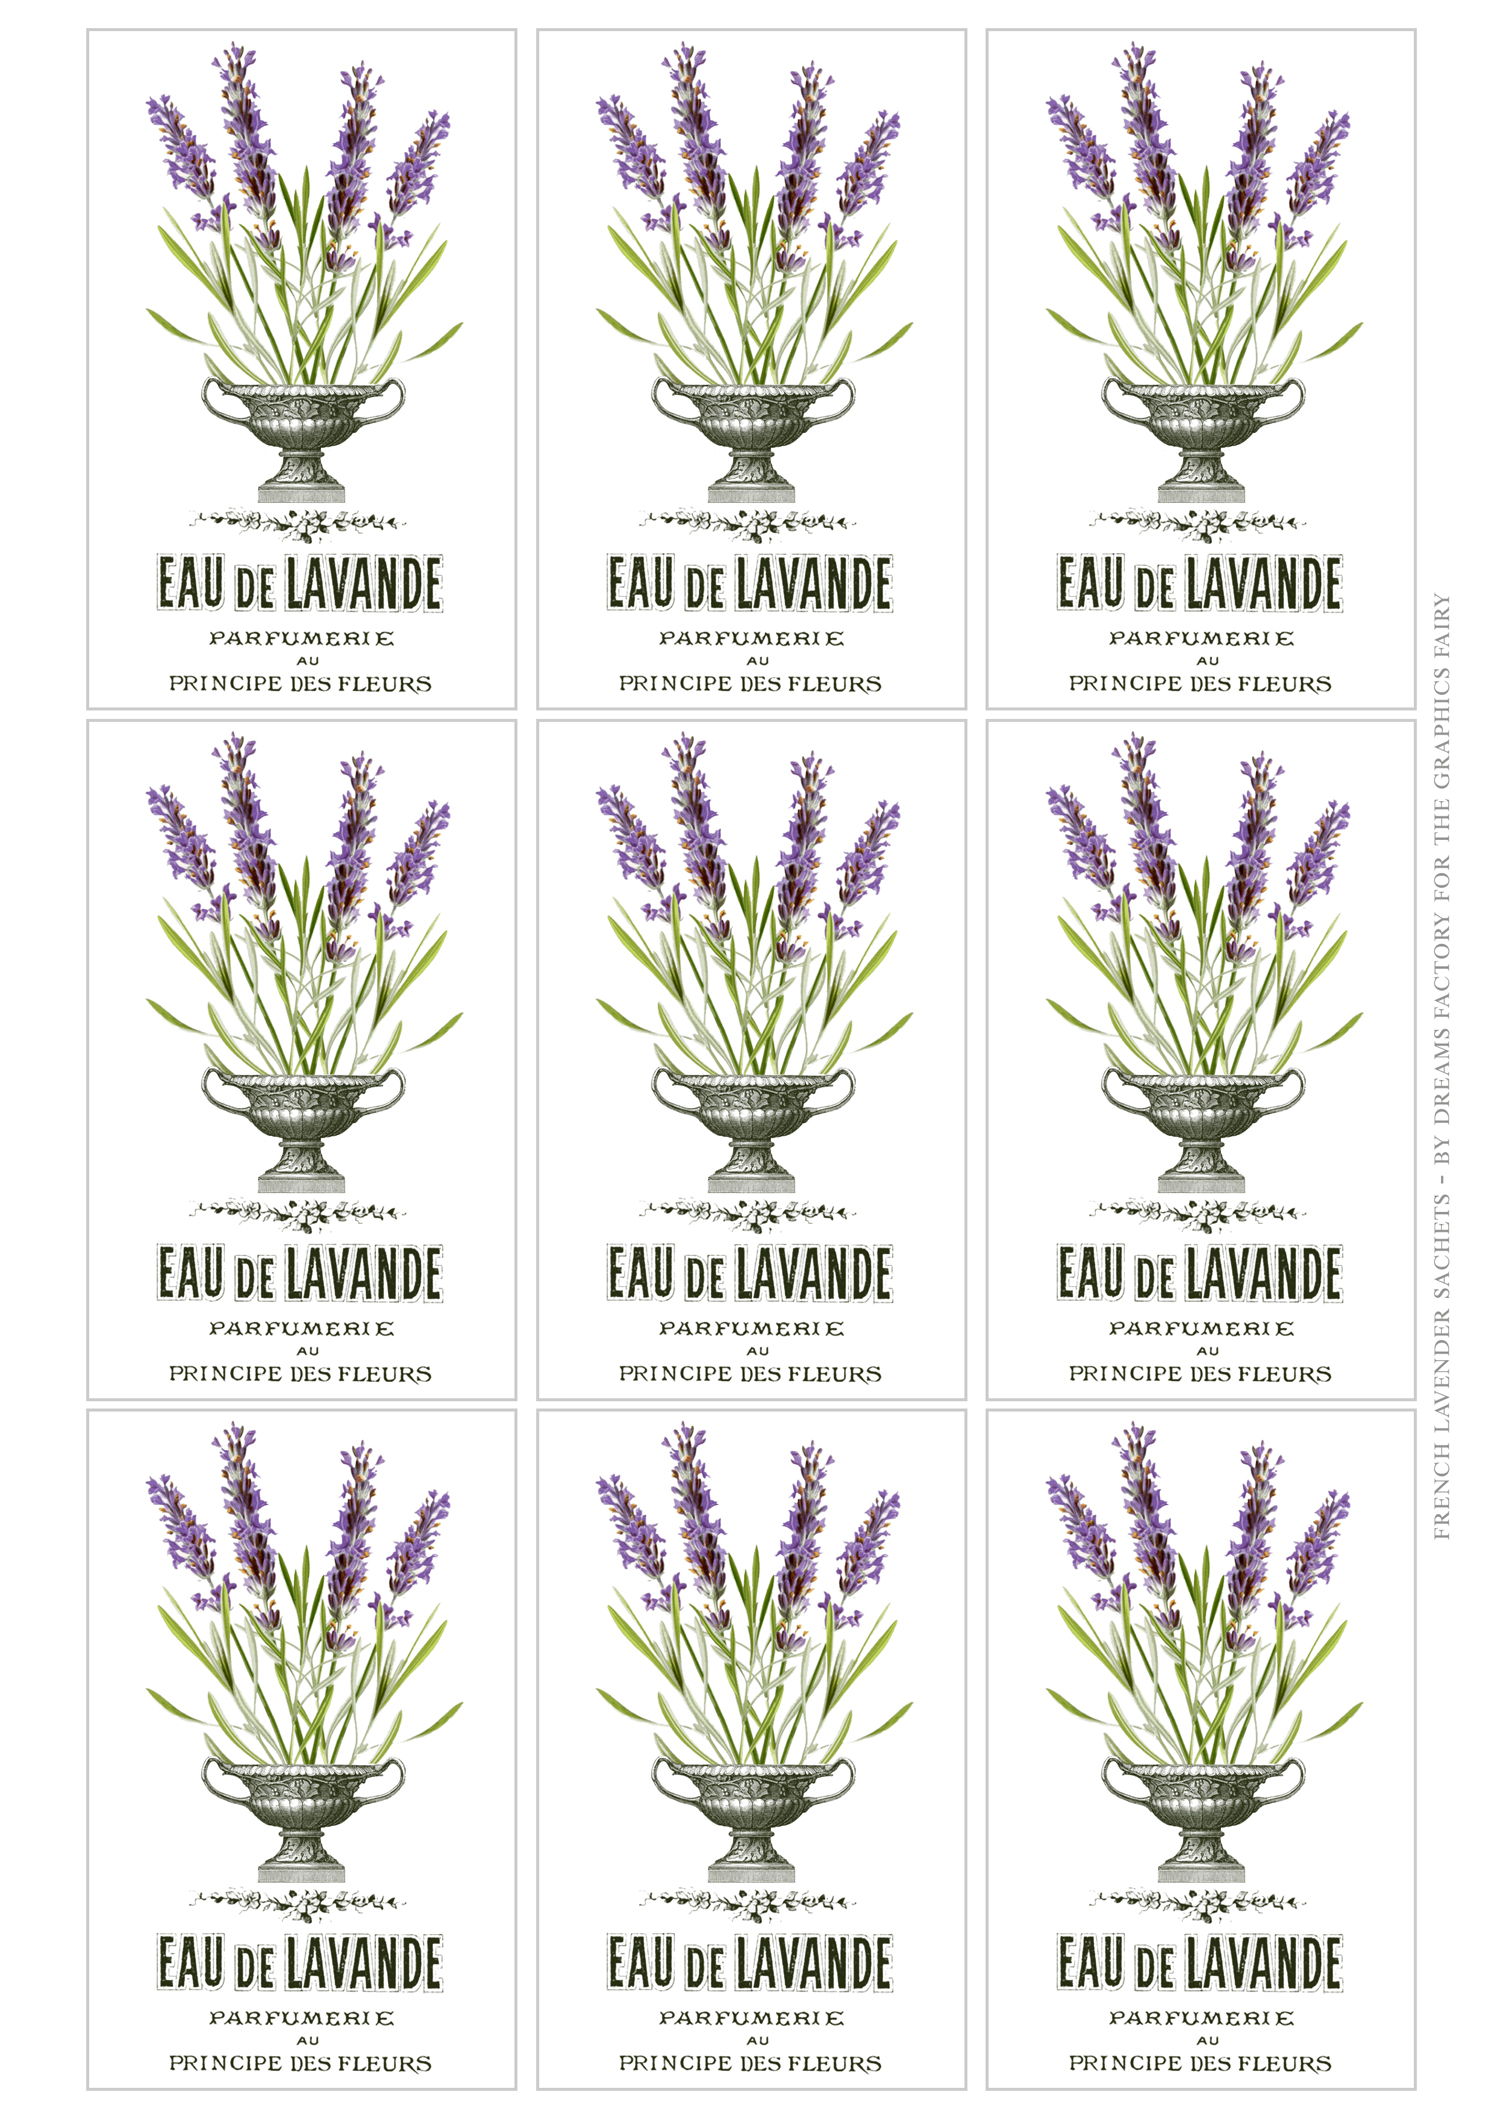 https://thegraphicsfairy.com/diy-no-sew-lavender-sachets/french-lavender-sachets-eau-de-lavande/